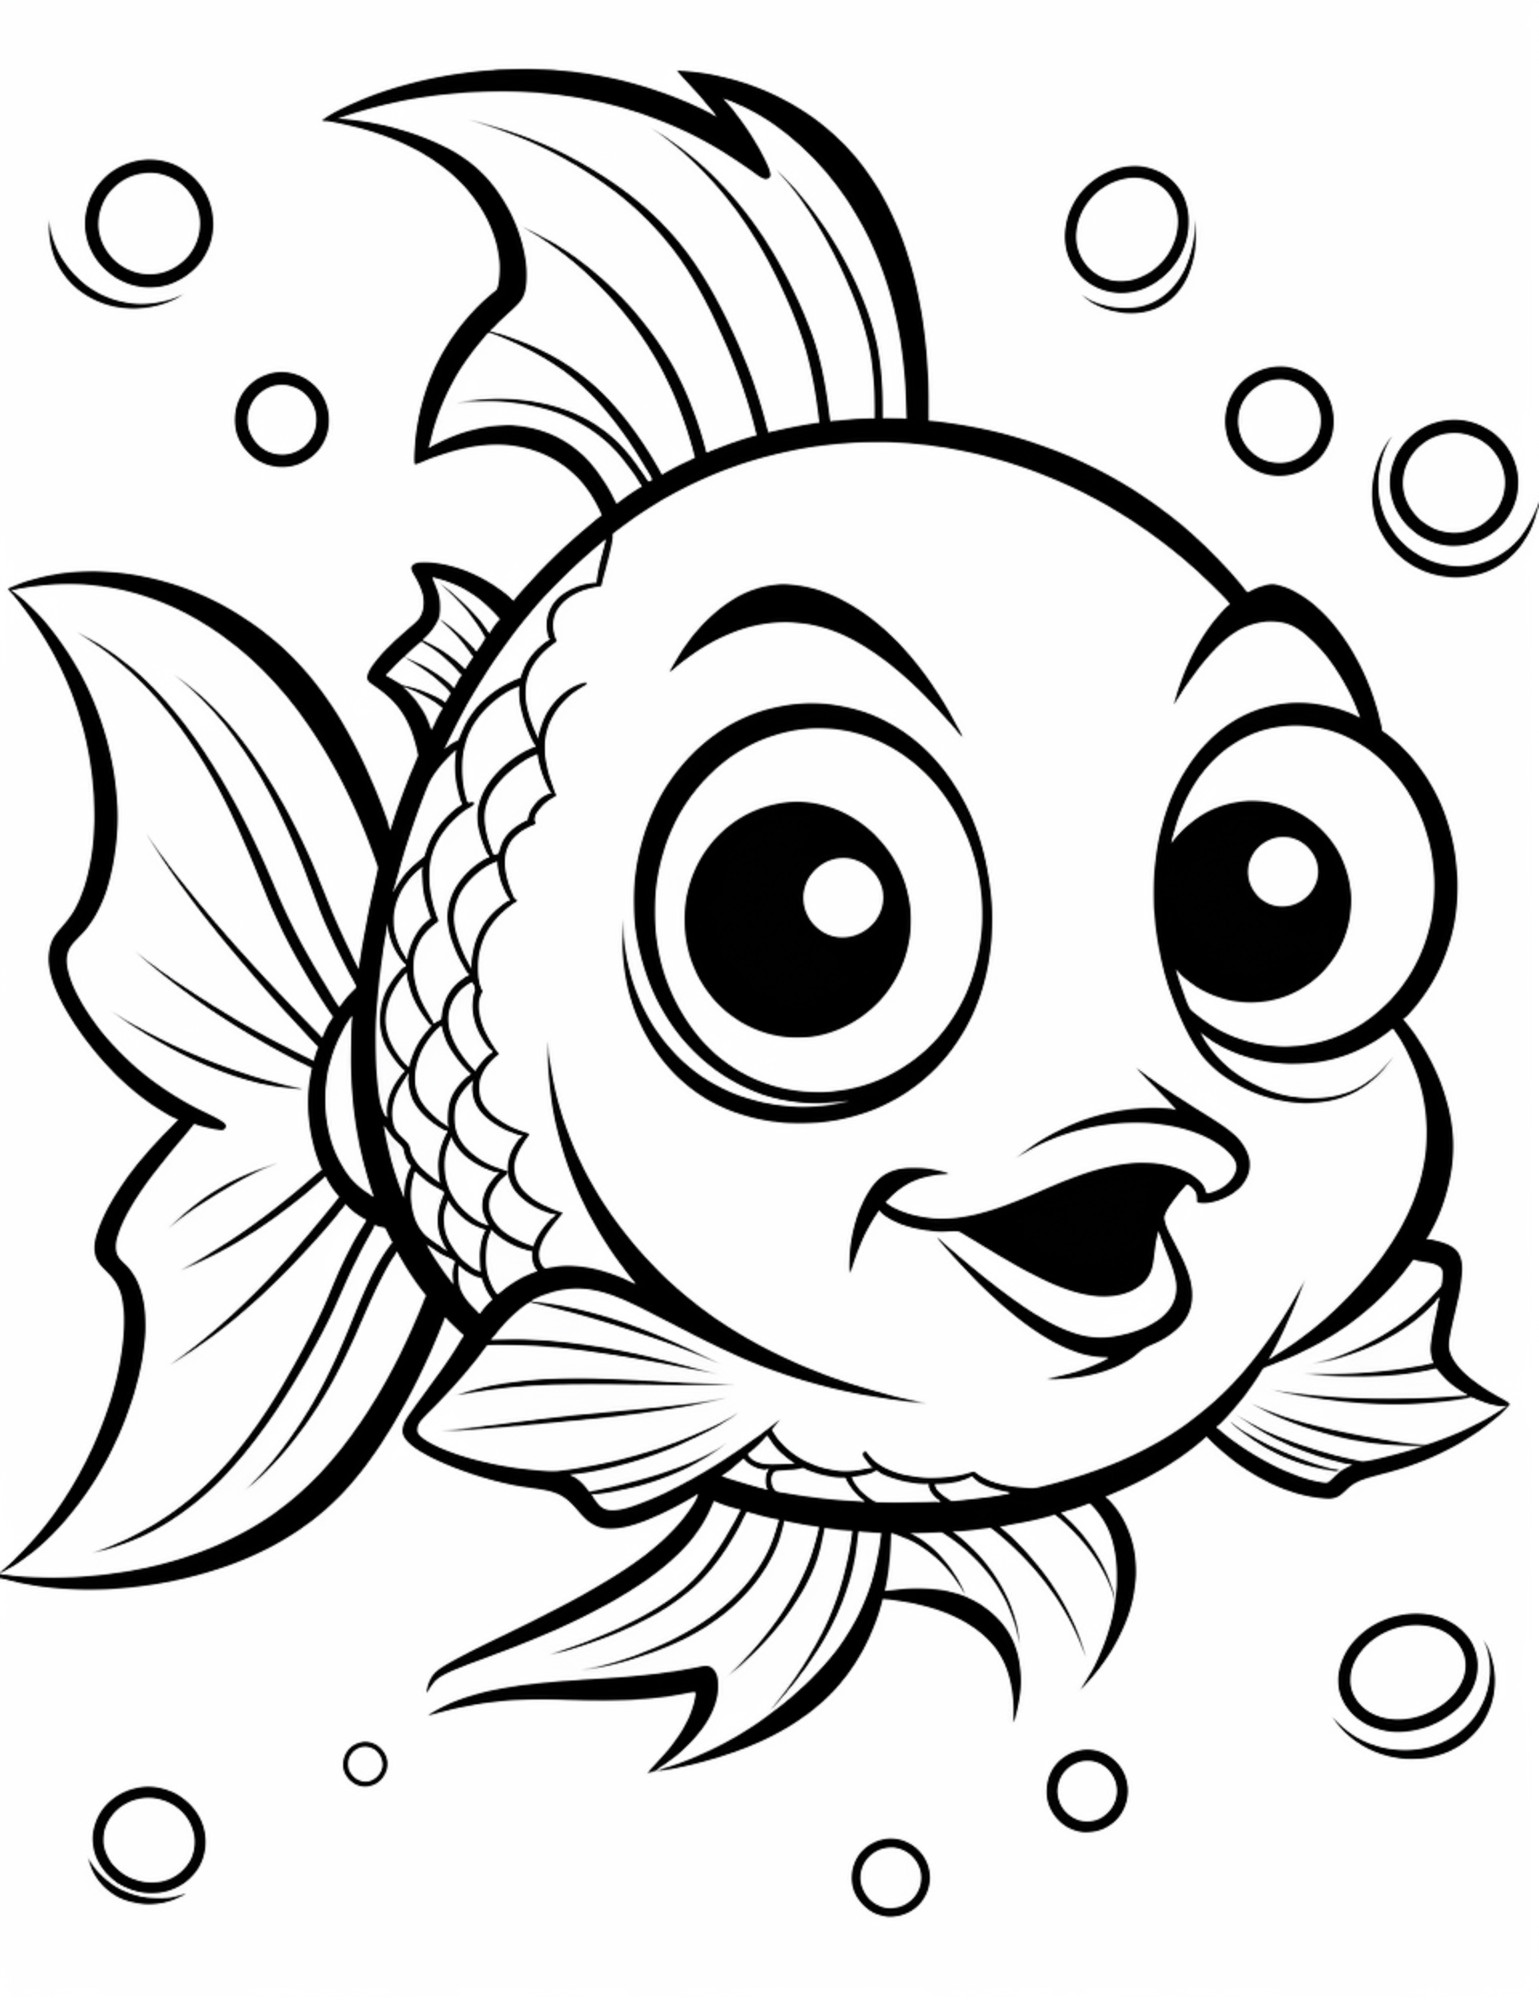 Раскраска для детей: интересная рыба крупным планом